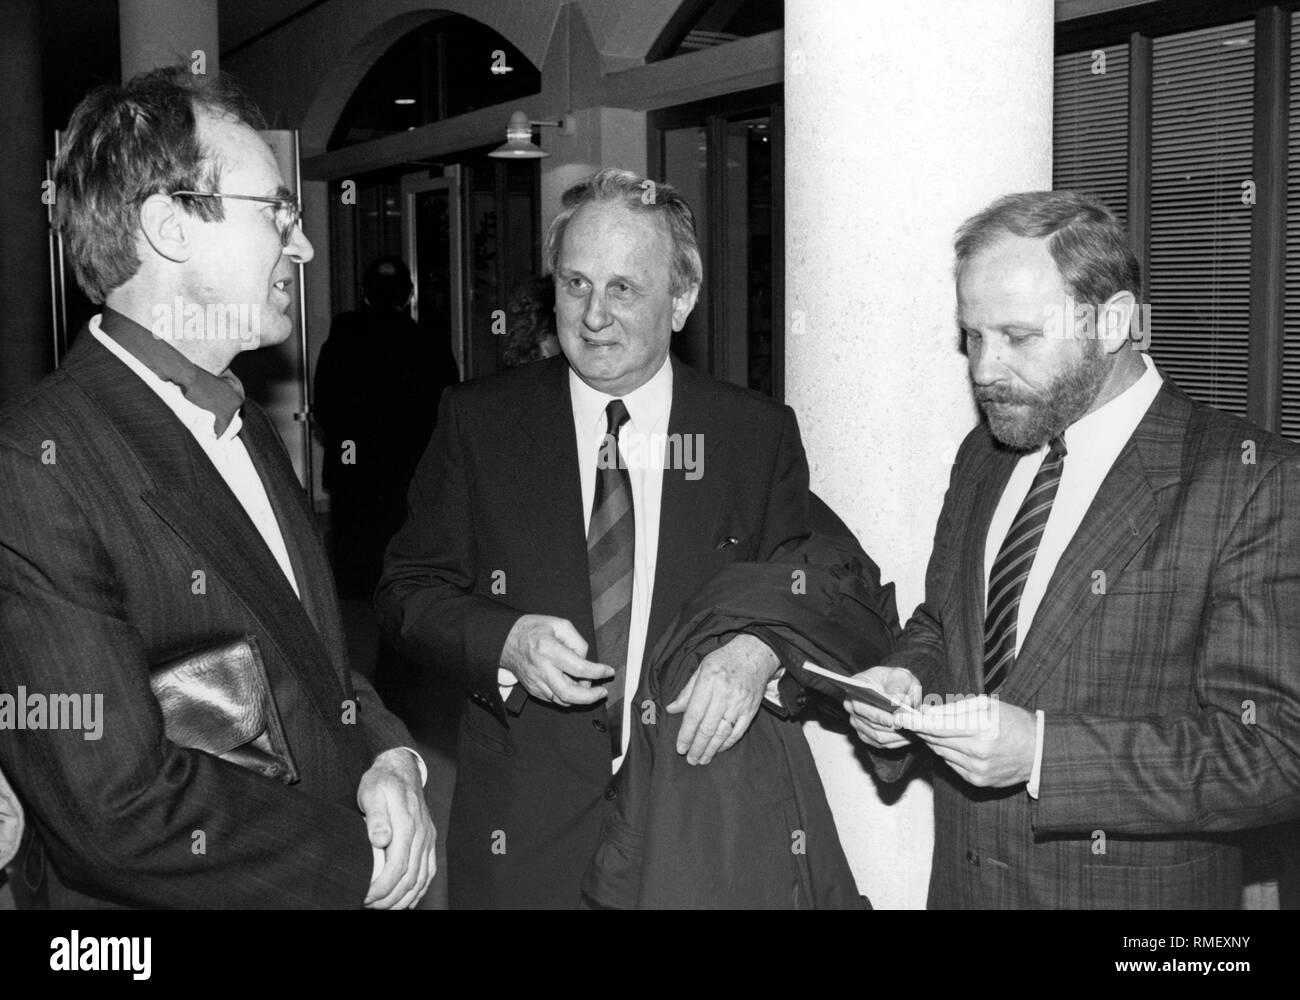 Reim Burbach, Rolf Hochhuth e Friedrich Seeger (da sinistra) in occasione di una prestazione del gioco Hochhuth 'Deputy' di Ottobrunn. Immagine non datata. Foto Stock